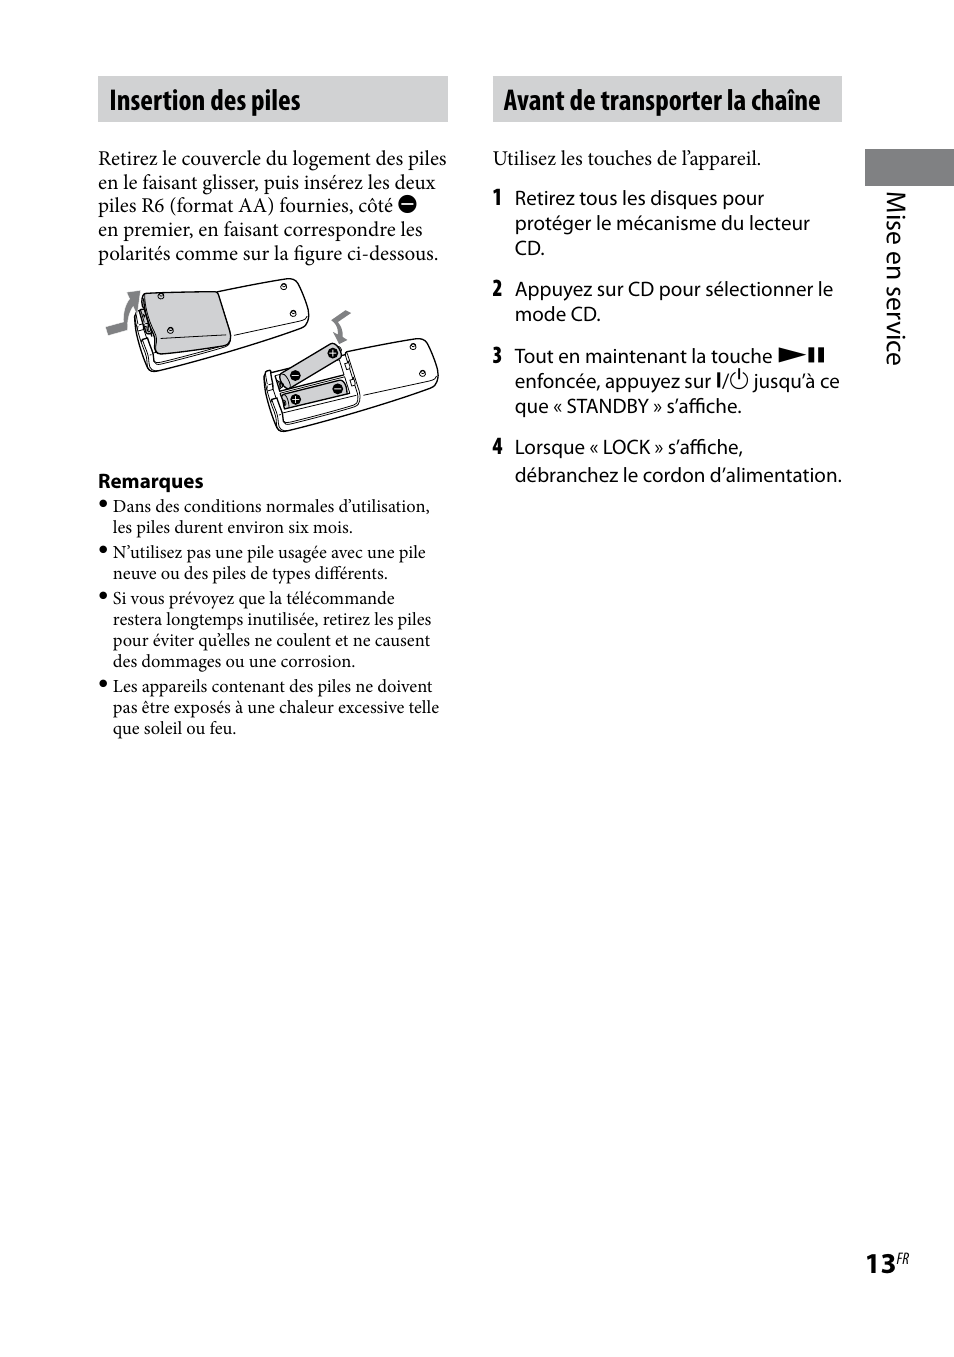 Insertion des piles, Avant de transporter la chaîne, Mise en ser vic e | Sony MHC-EC69 Manuel d'utilisation | Page 13 / 44